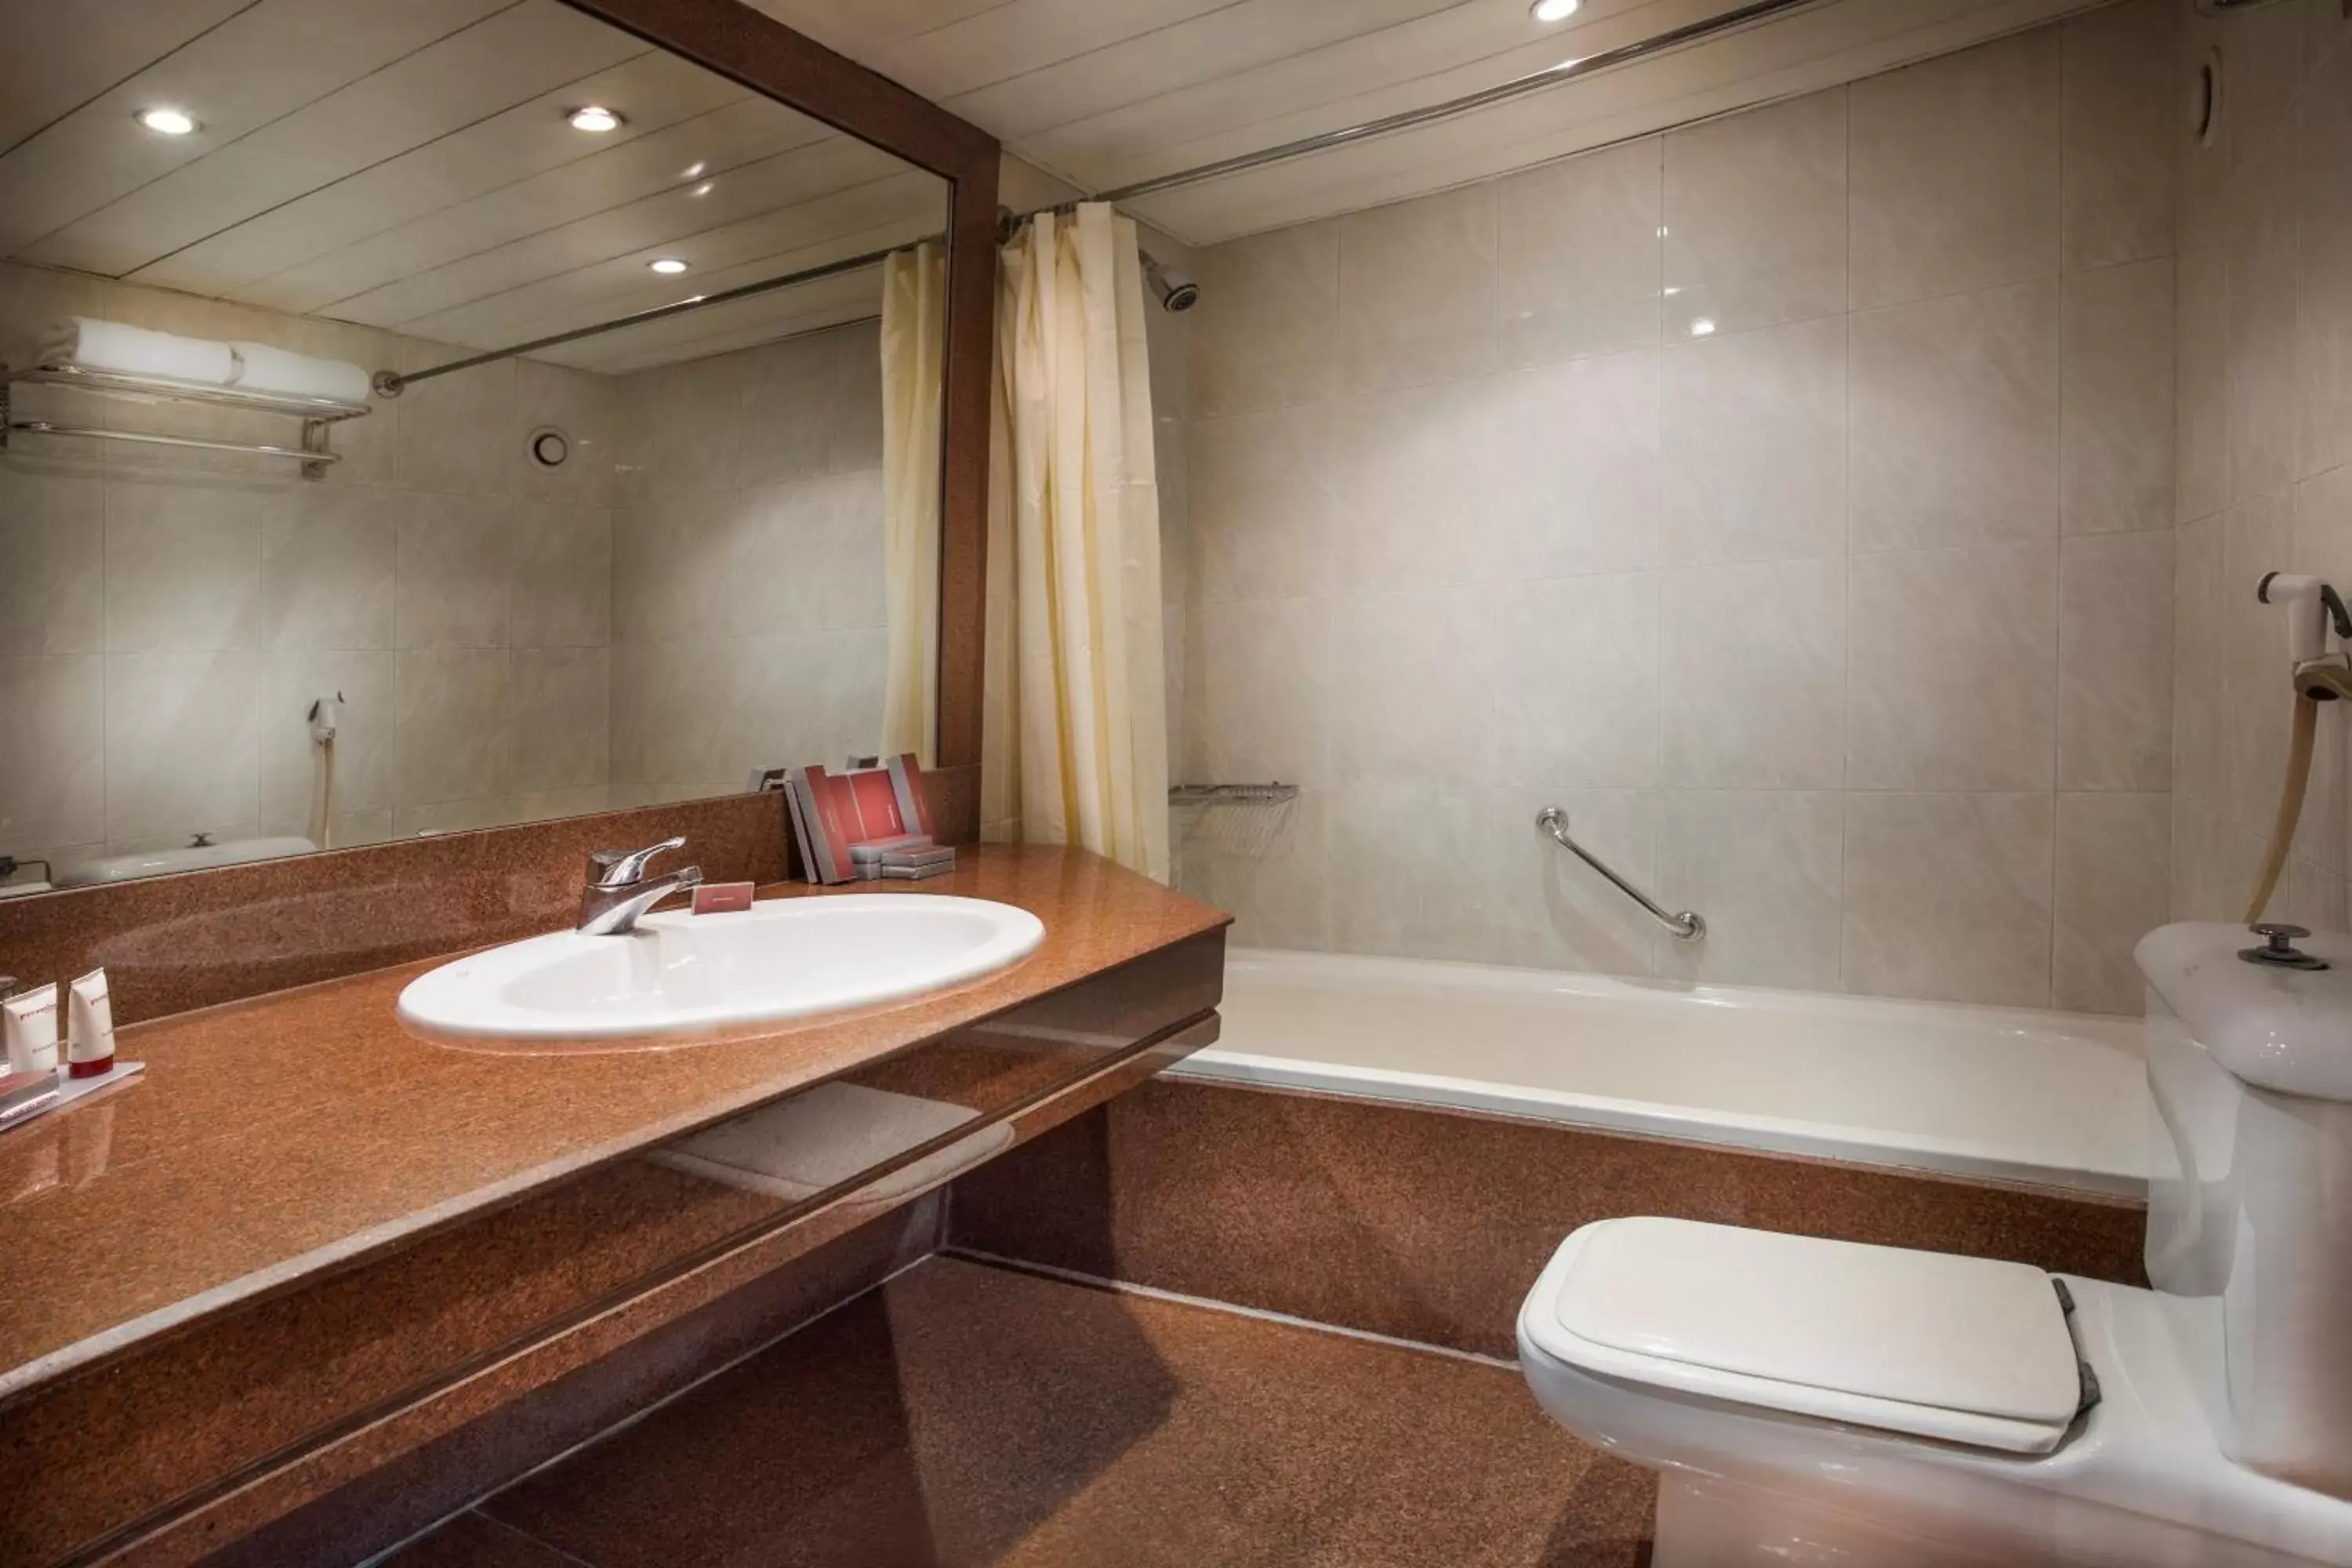 Bathroom in Pyramisa Suites Hotel Cairo